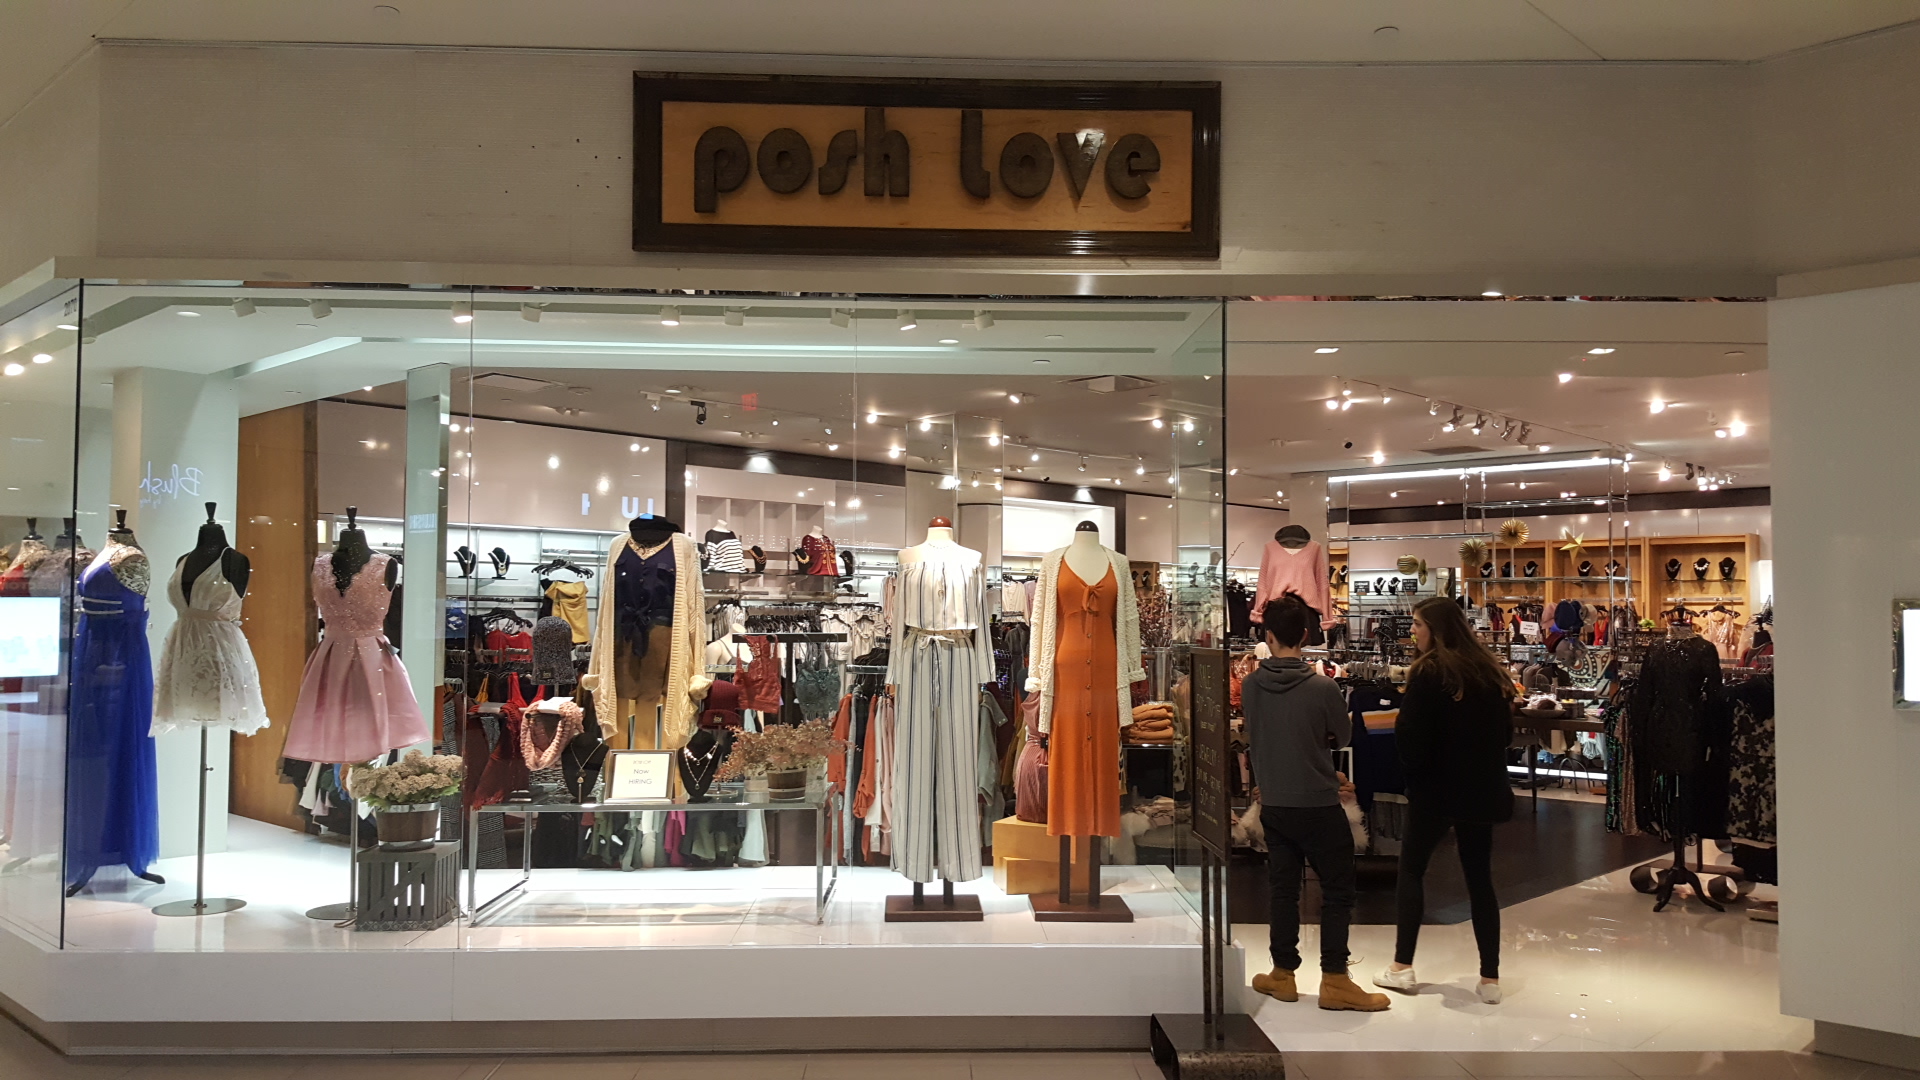 Posh Love Boutique